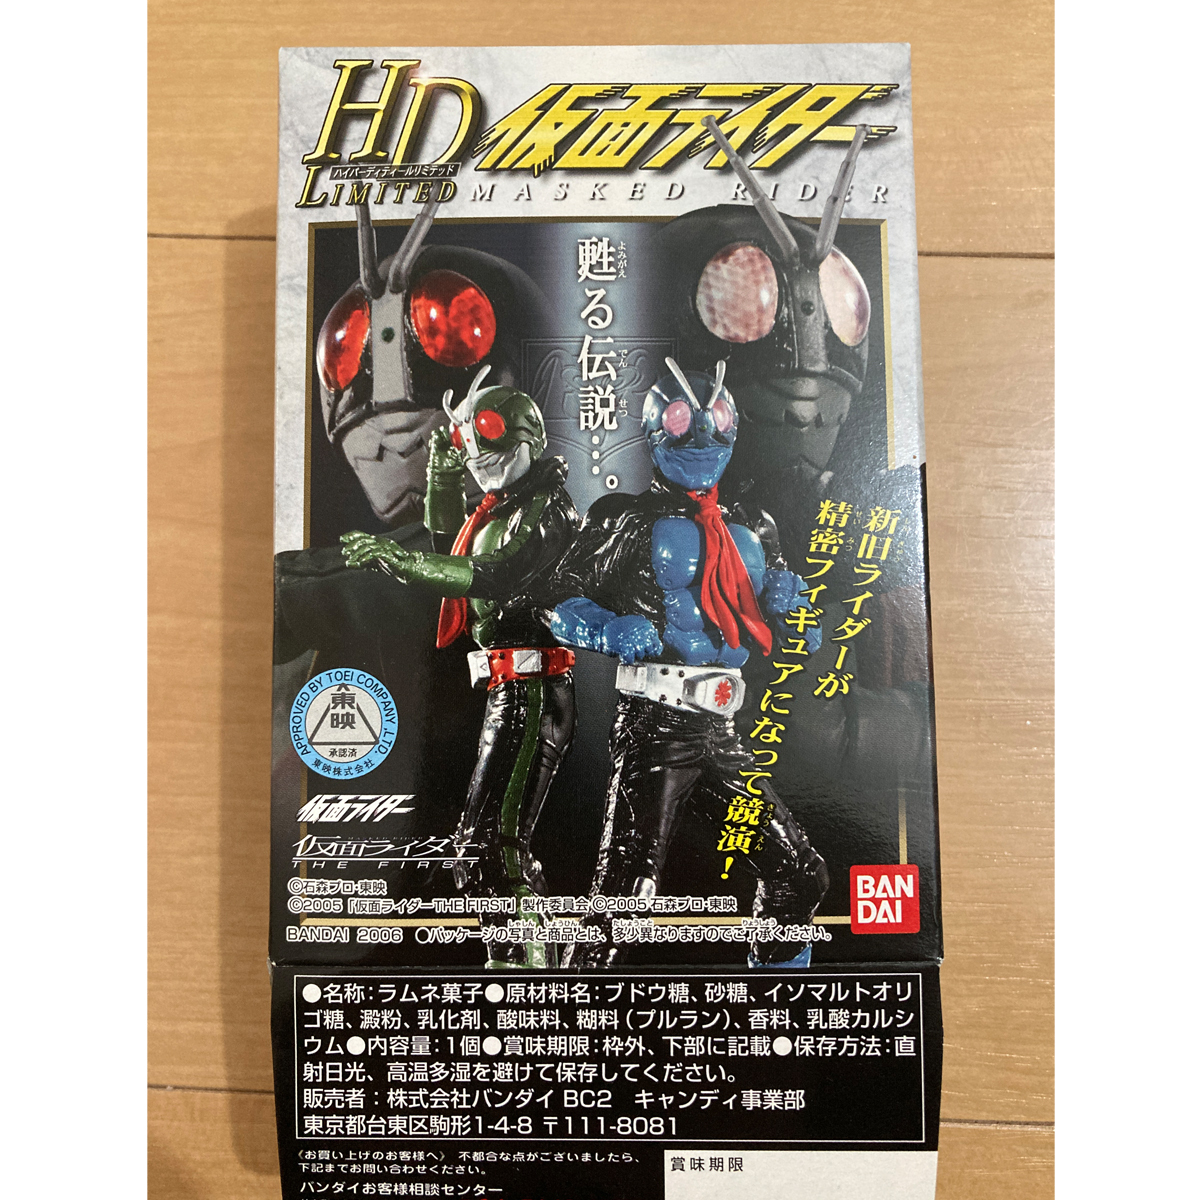 HD-Limited Kamen Rider The Firest 2 номер нераспечатанный * новый товар осмотр )HDM..ruminasHD HG Kouya .. один знак Hayabusa человек Ultimate solid 